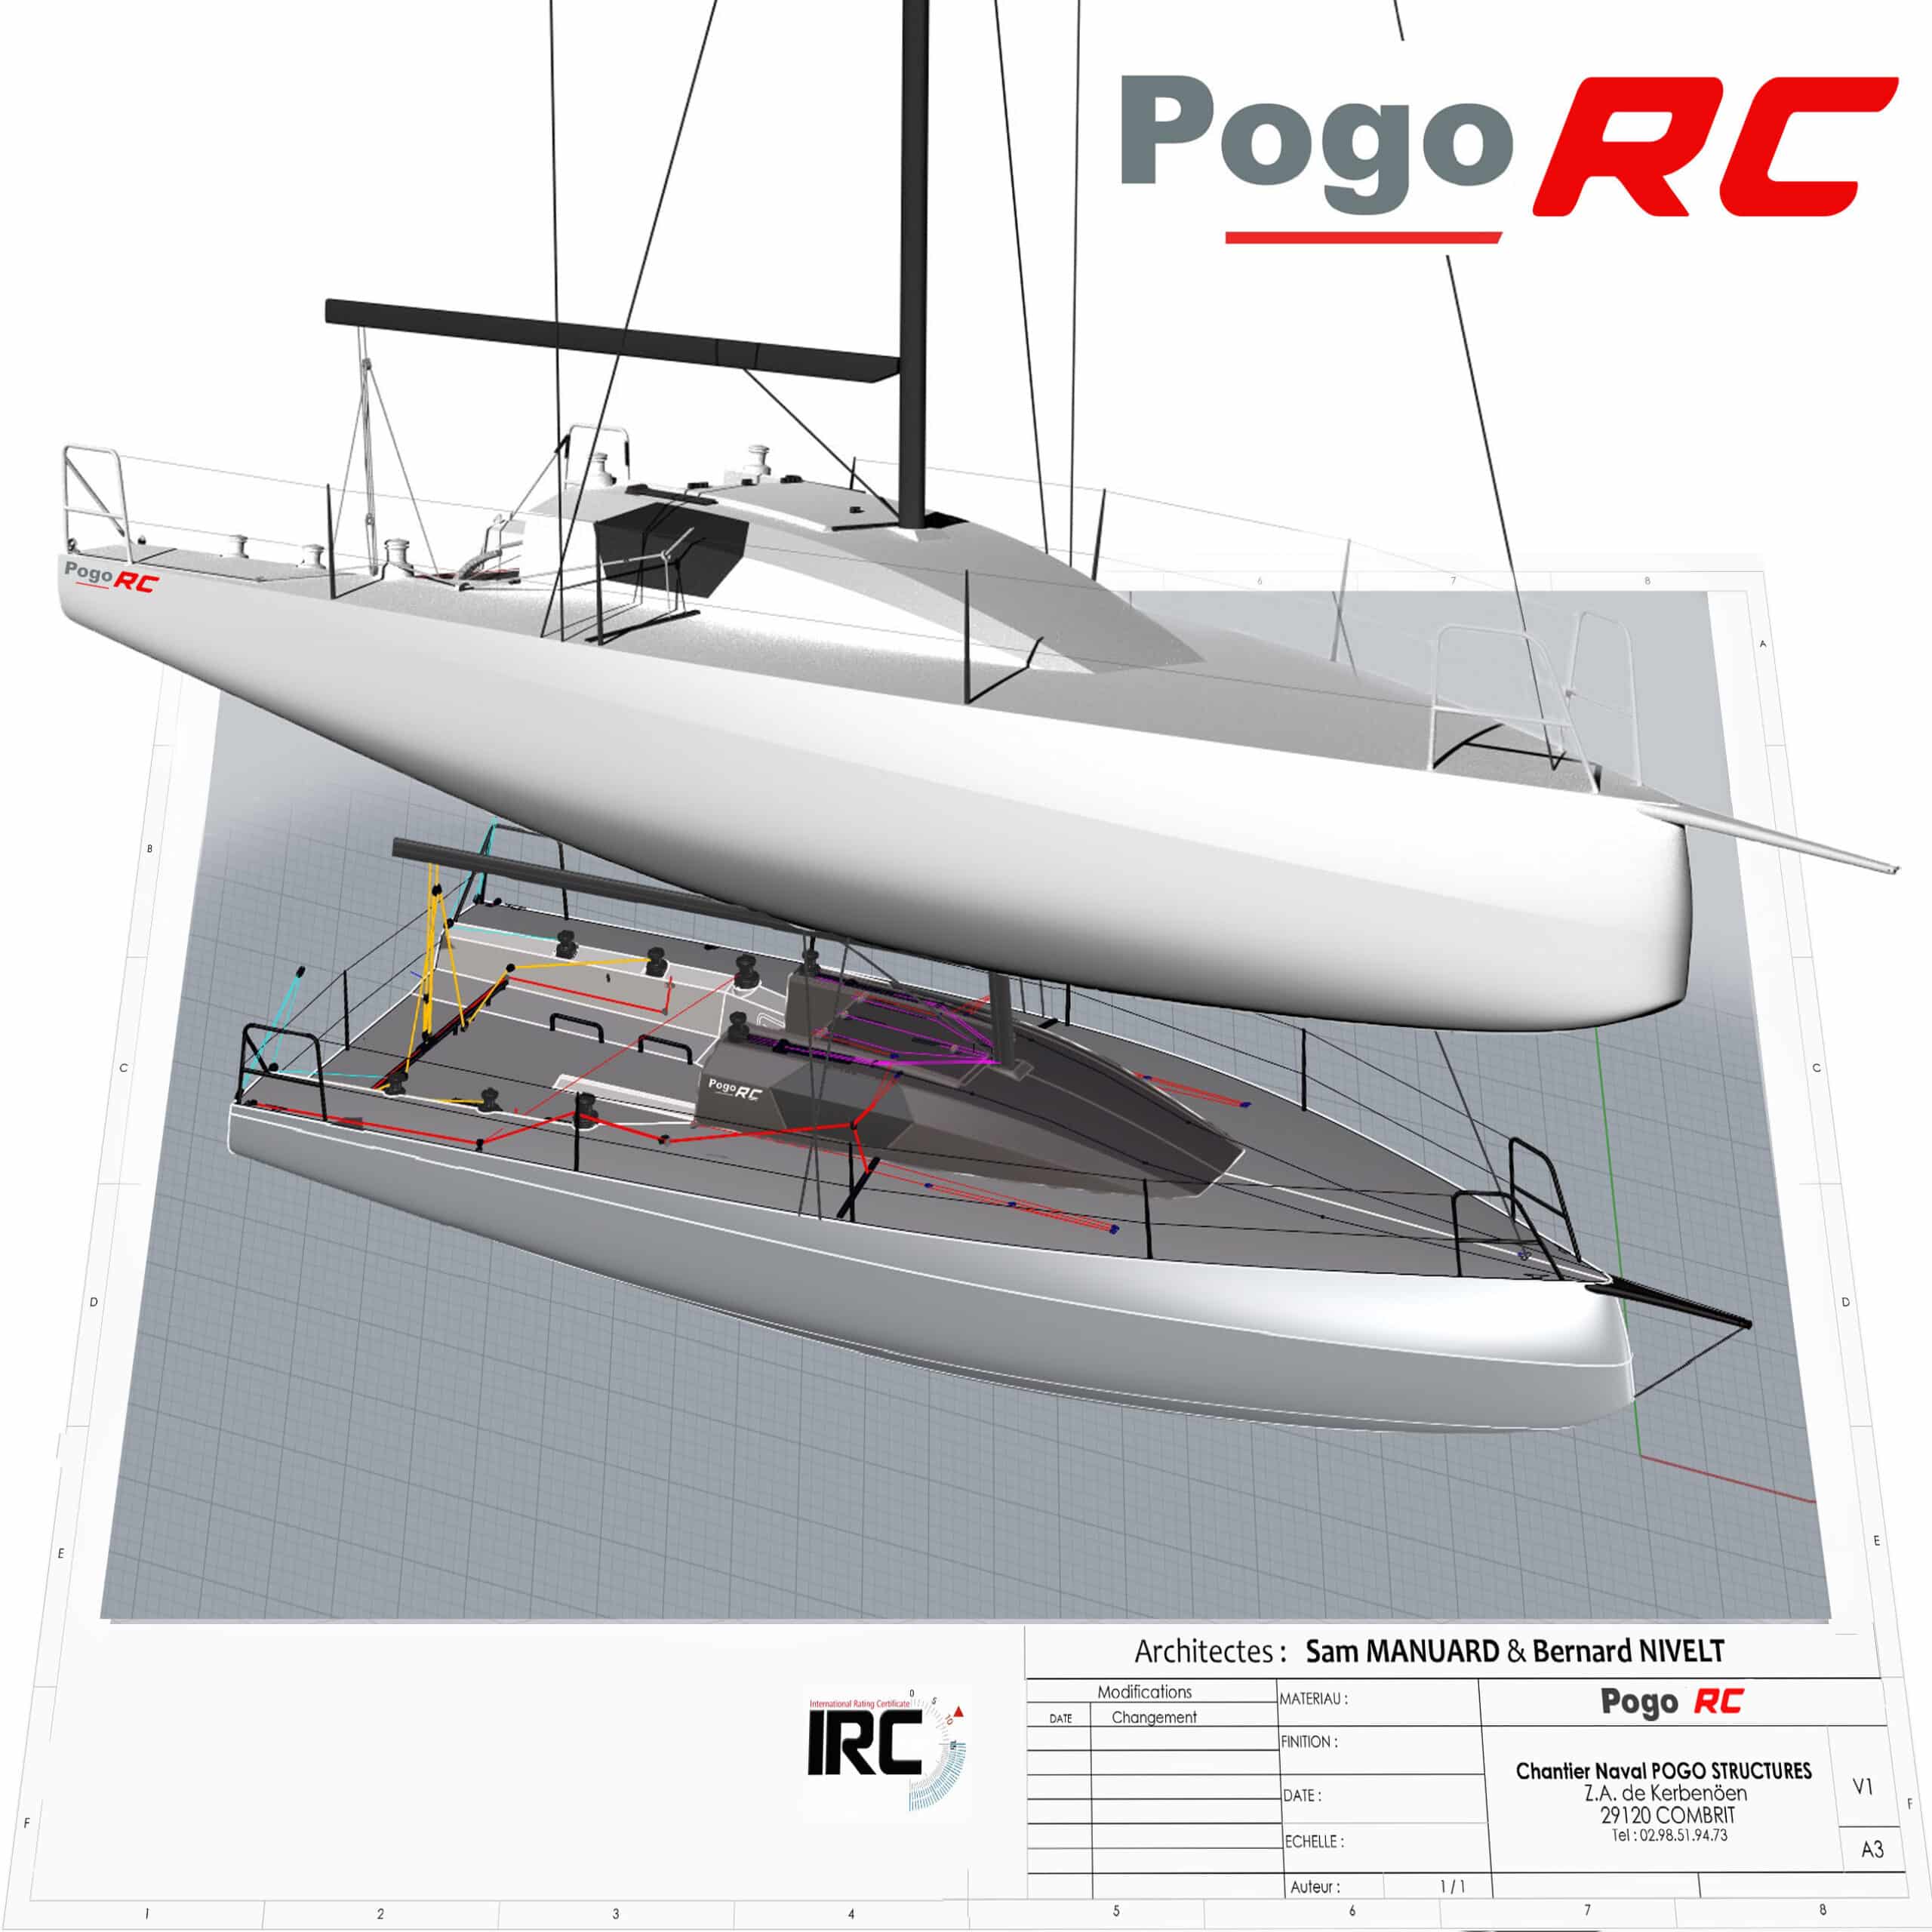 Pogo Launches its Latest Coastal Rocket